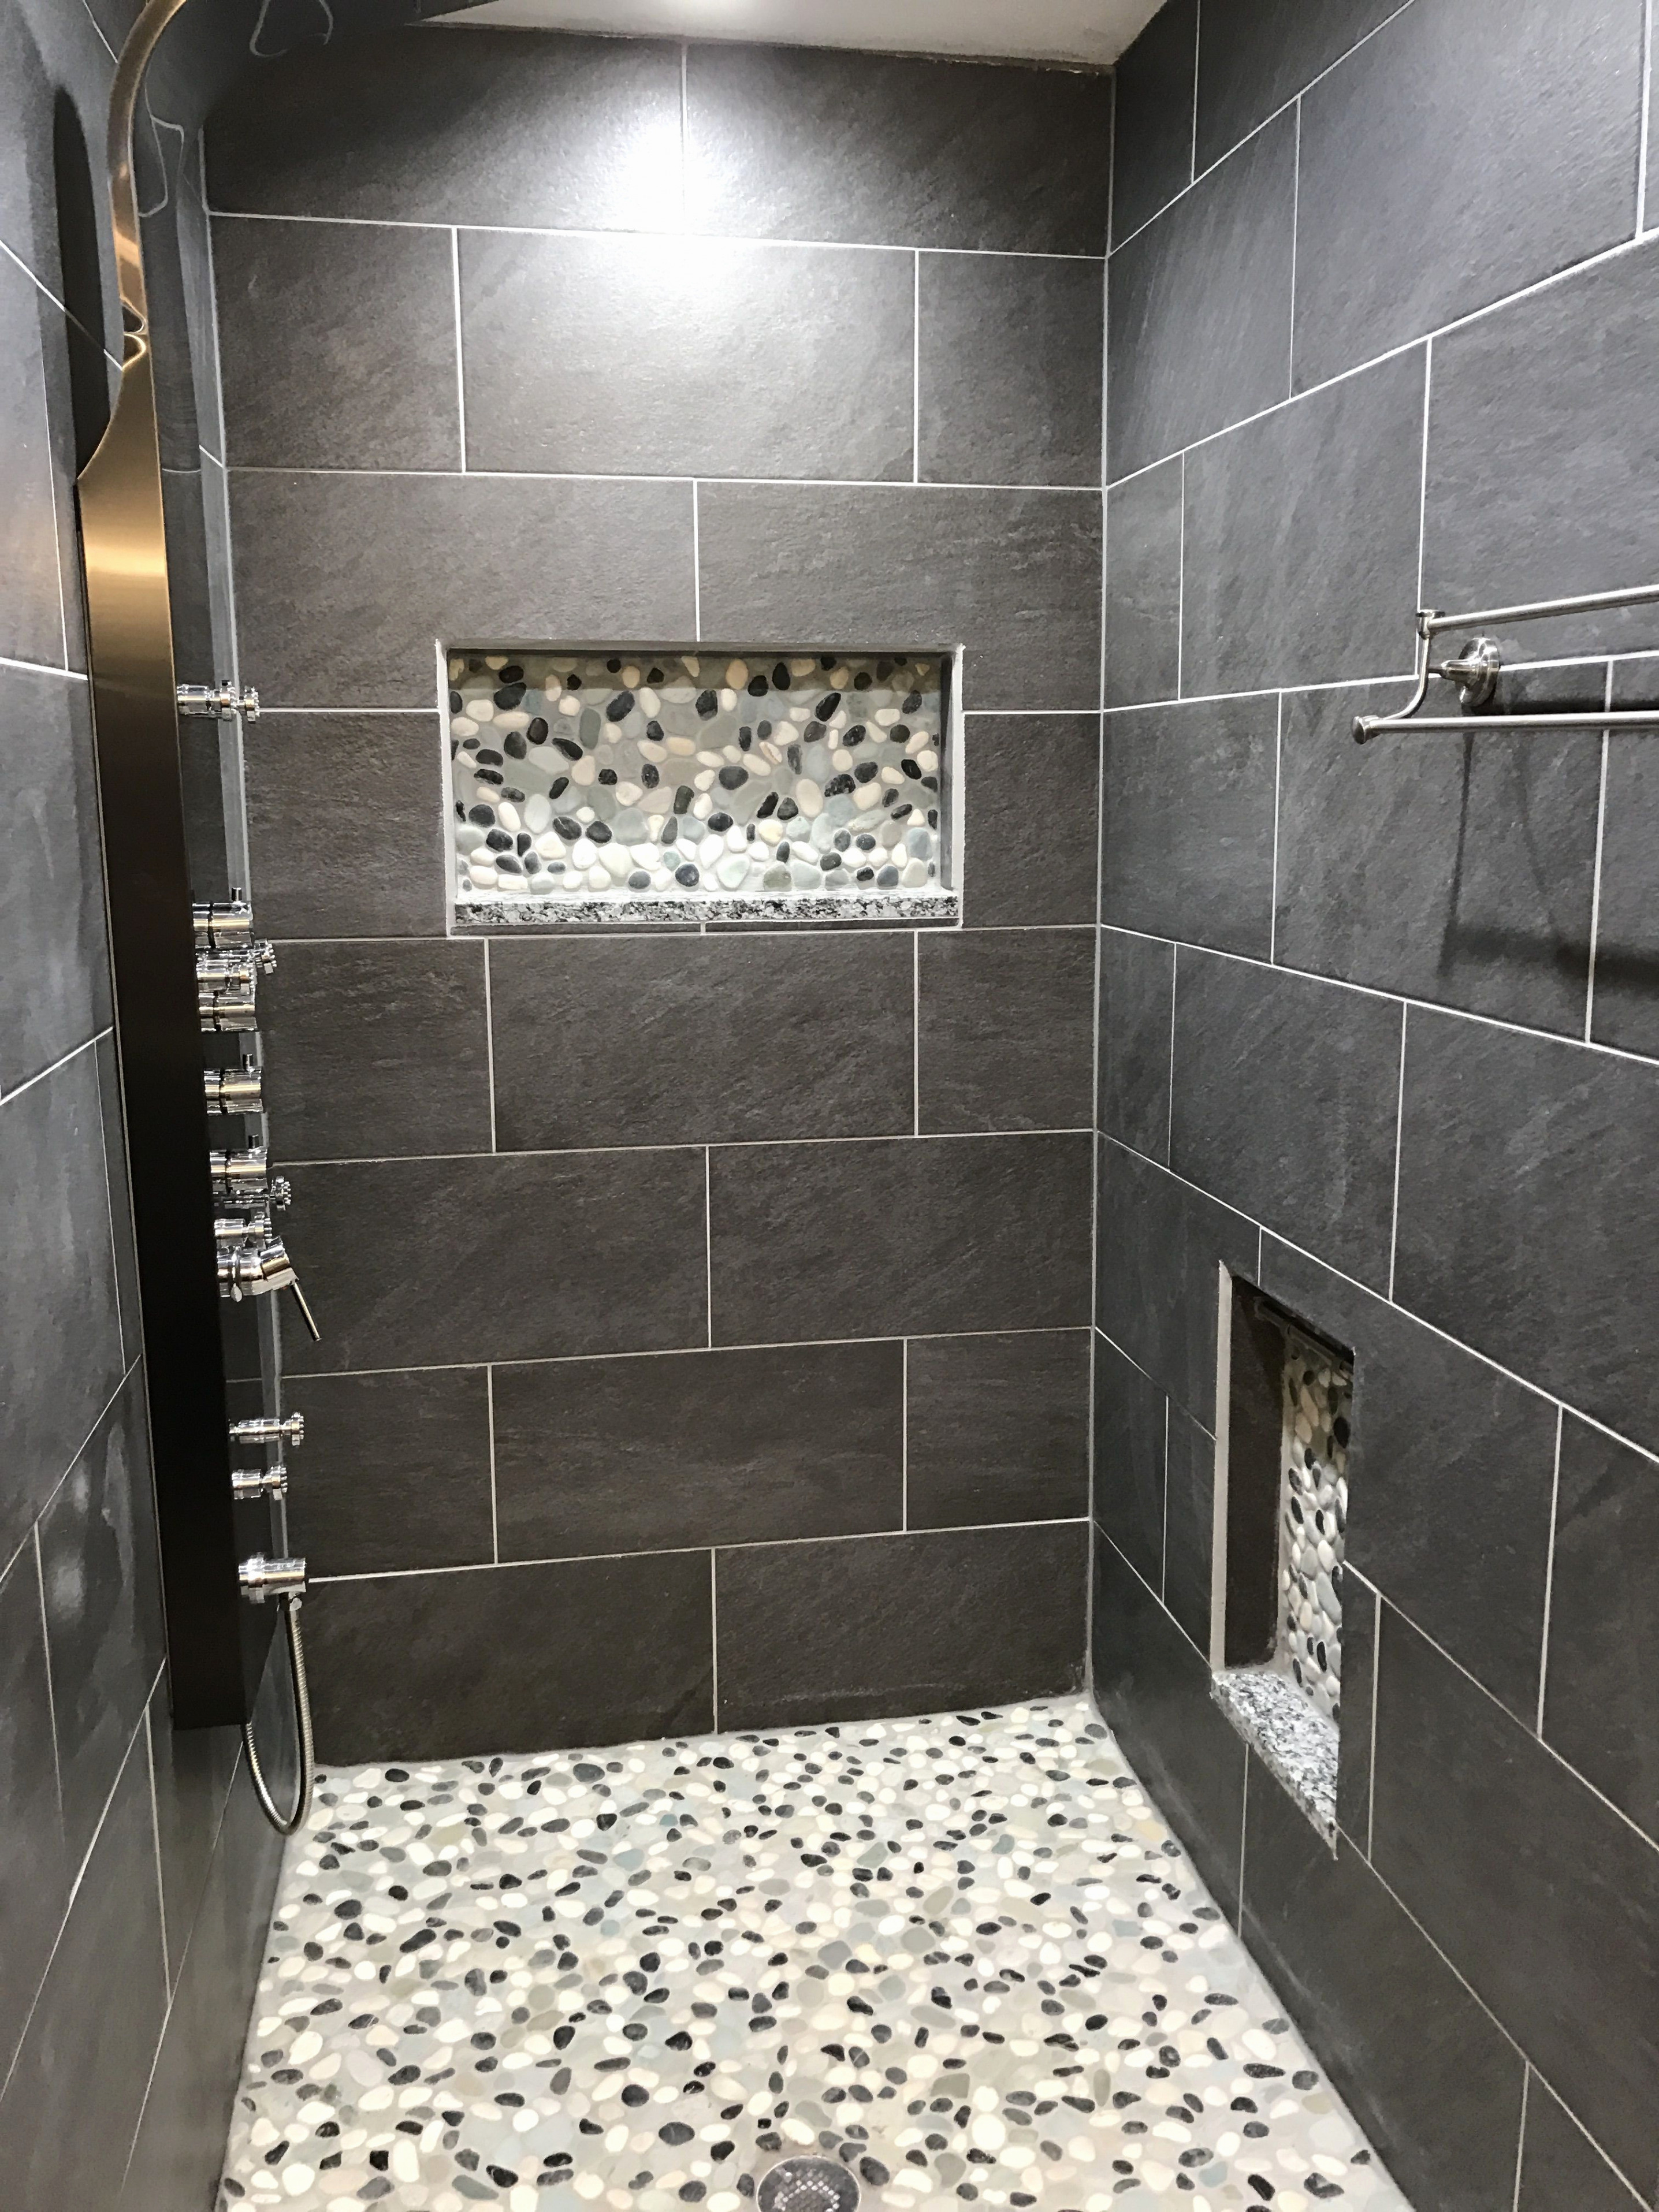 11 Best Hardwood Floor Tile In Bathroom 2022 free download hardwood floor tile in bathroom of beautiful installing a tile floor in bathroom on laying ceramic tile pertaining to beautiful installing a tile floor in bathroom on laying ceramic tile 50 